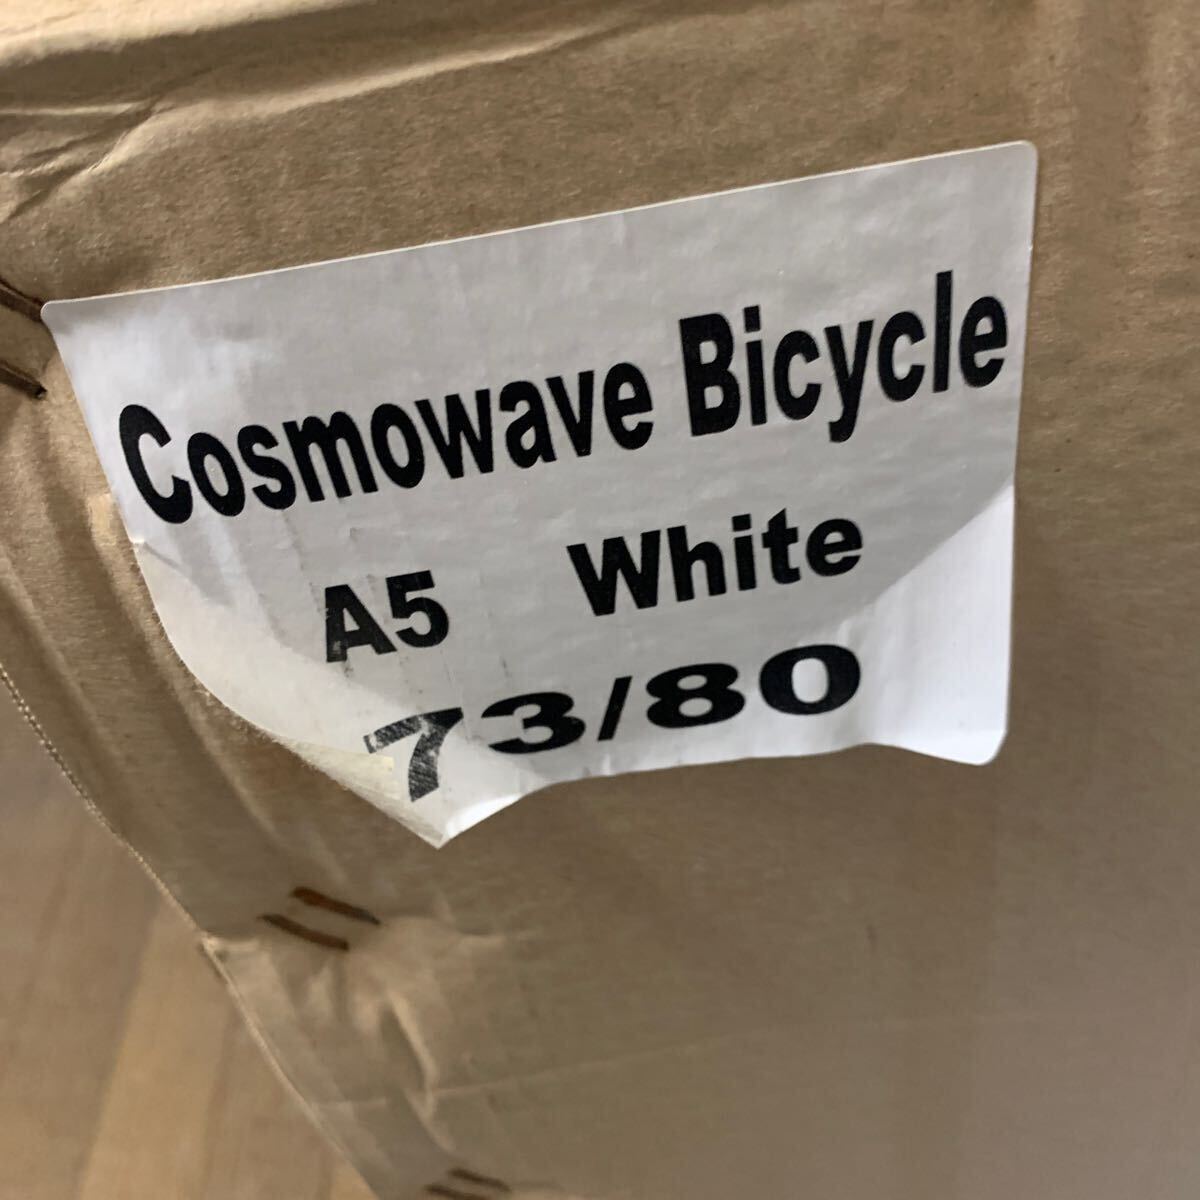 【基本 川崎市直接引取り】 新品 未使用 未組立 箱入り Cosmowave Bicycle A5 ホワイト 電動自転車 電動アシスト自転車 サイクリング の画像6